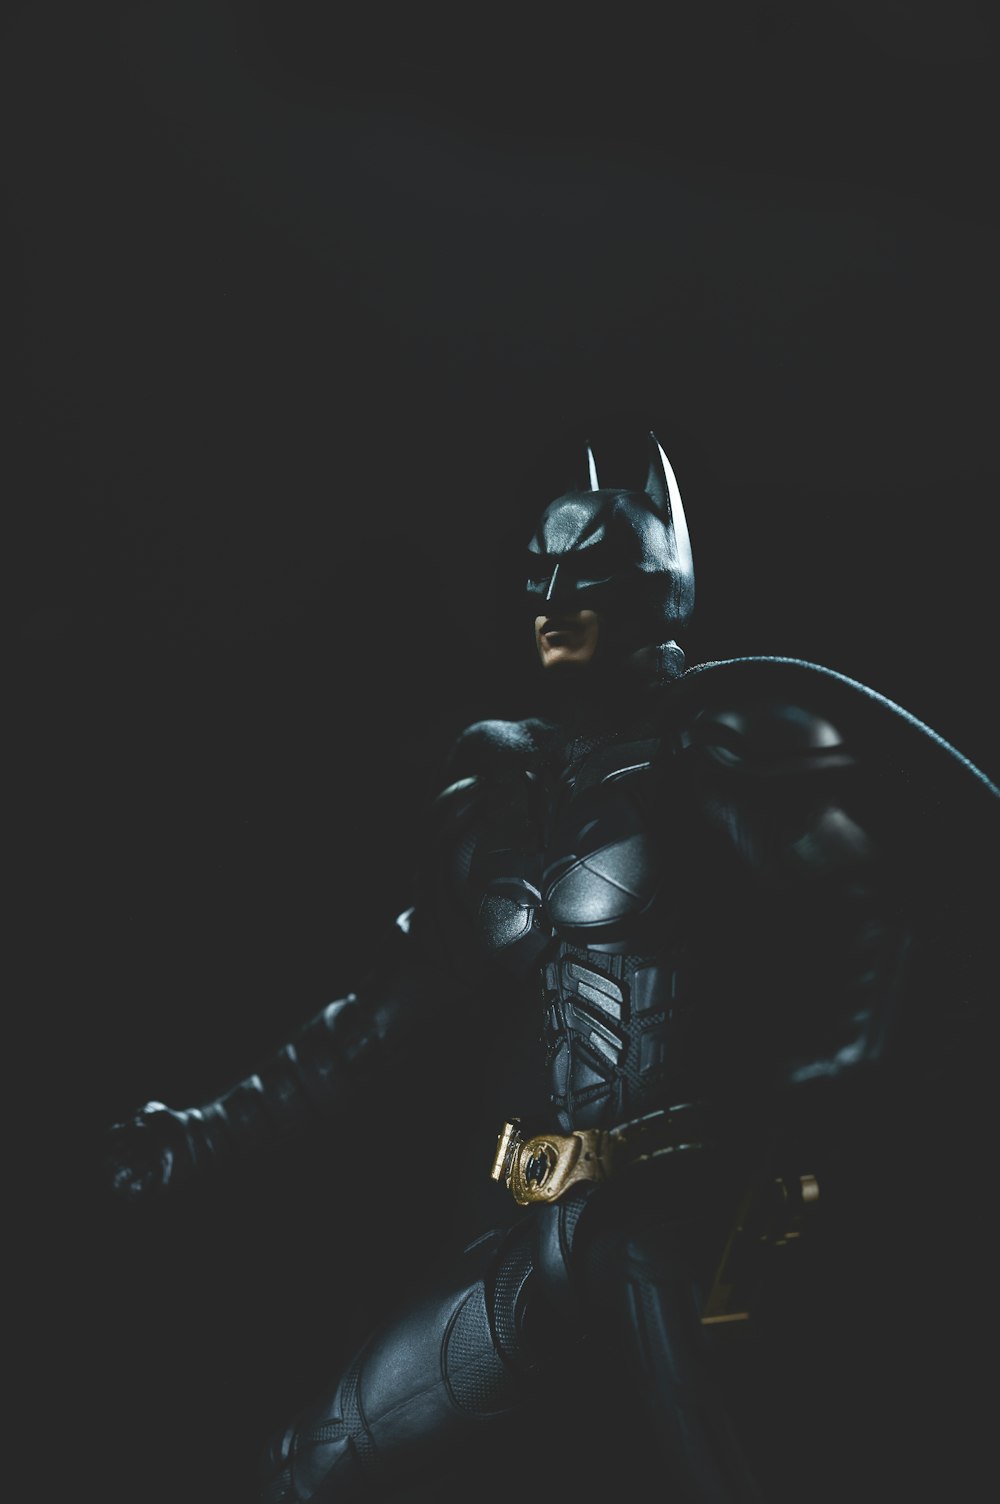 a man in a batman costume holding a bat